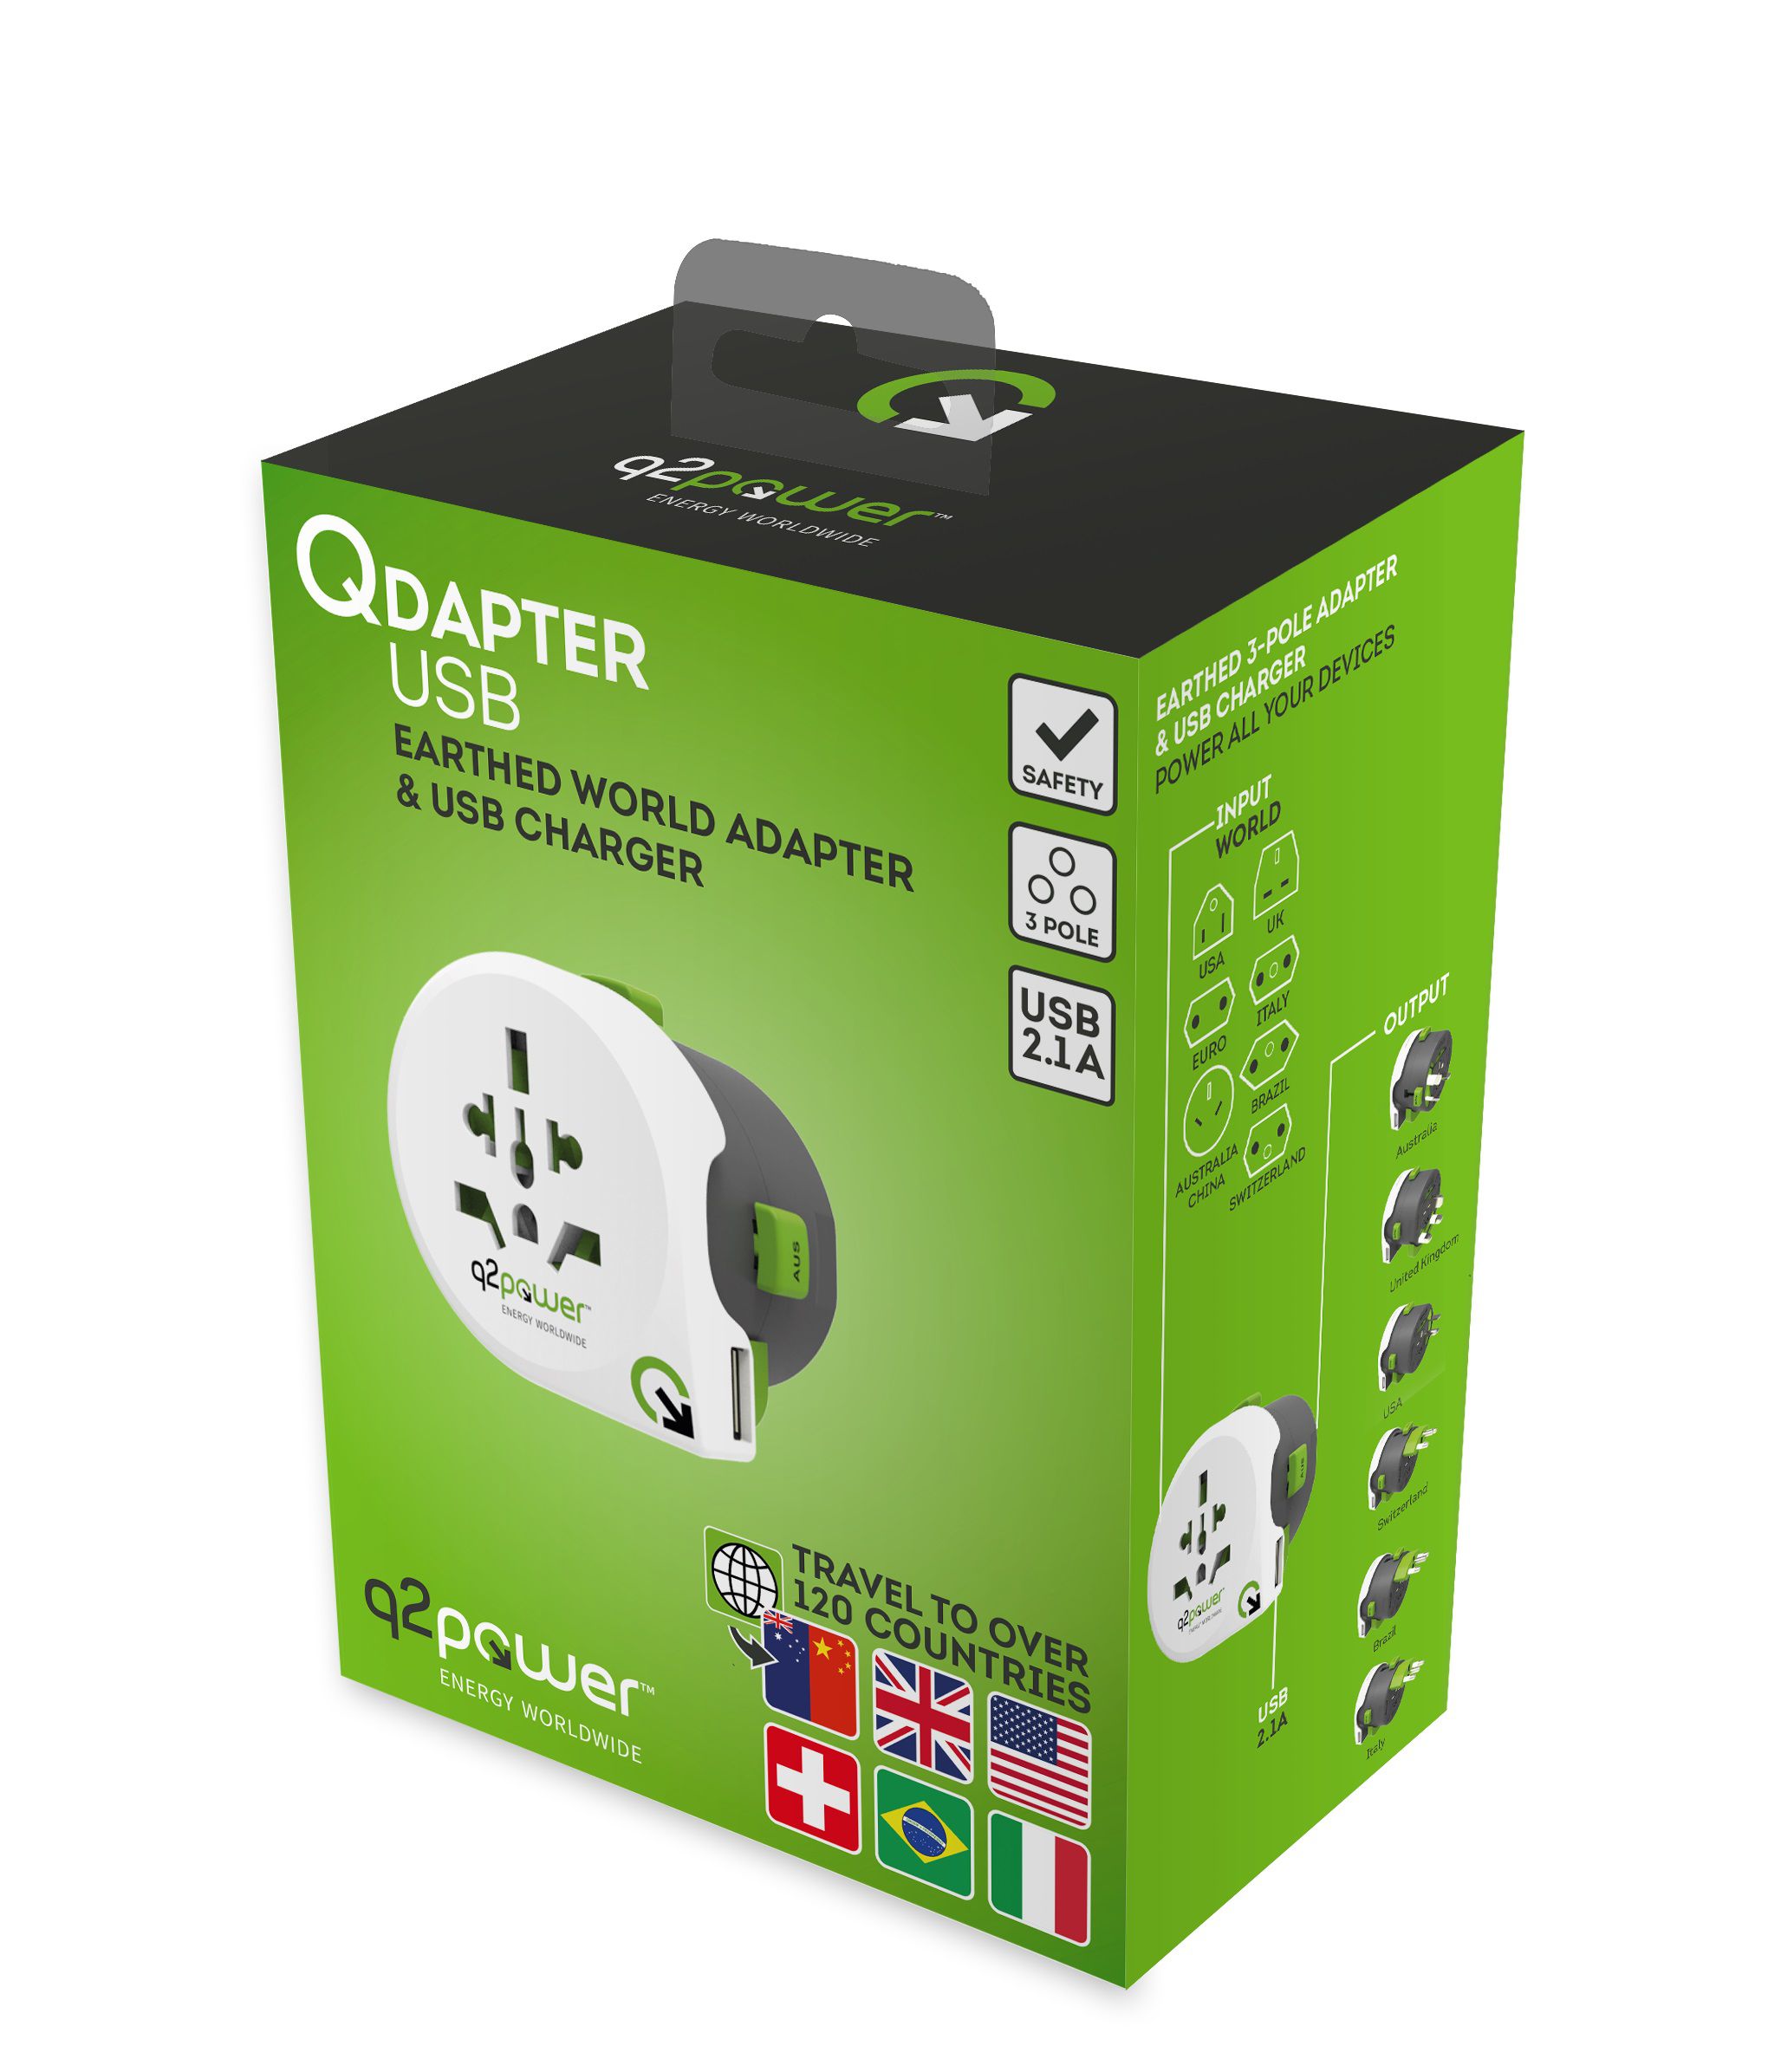 Weltreiseadapter "QDAPTER" 360 USB